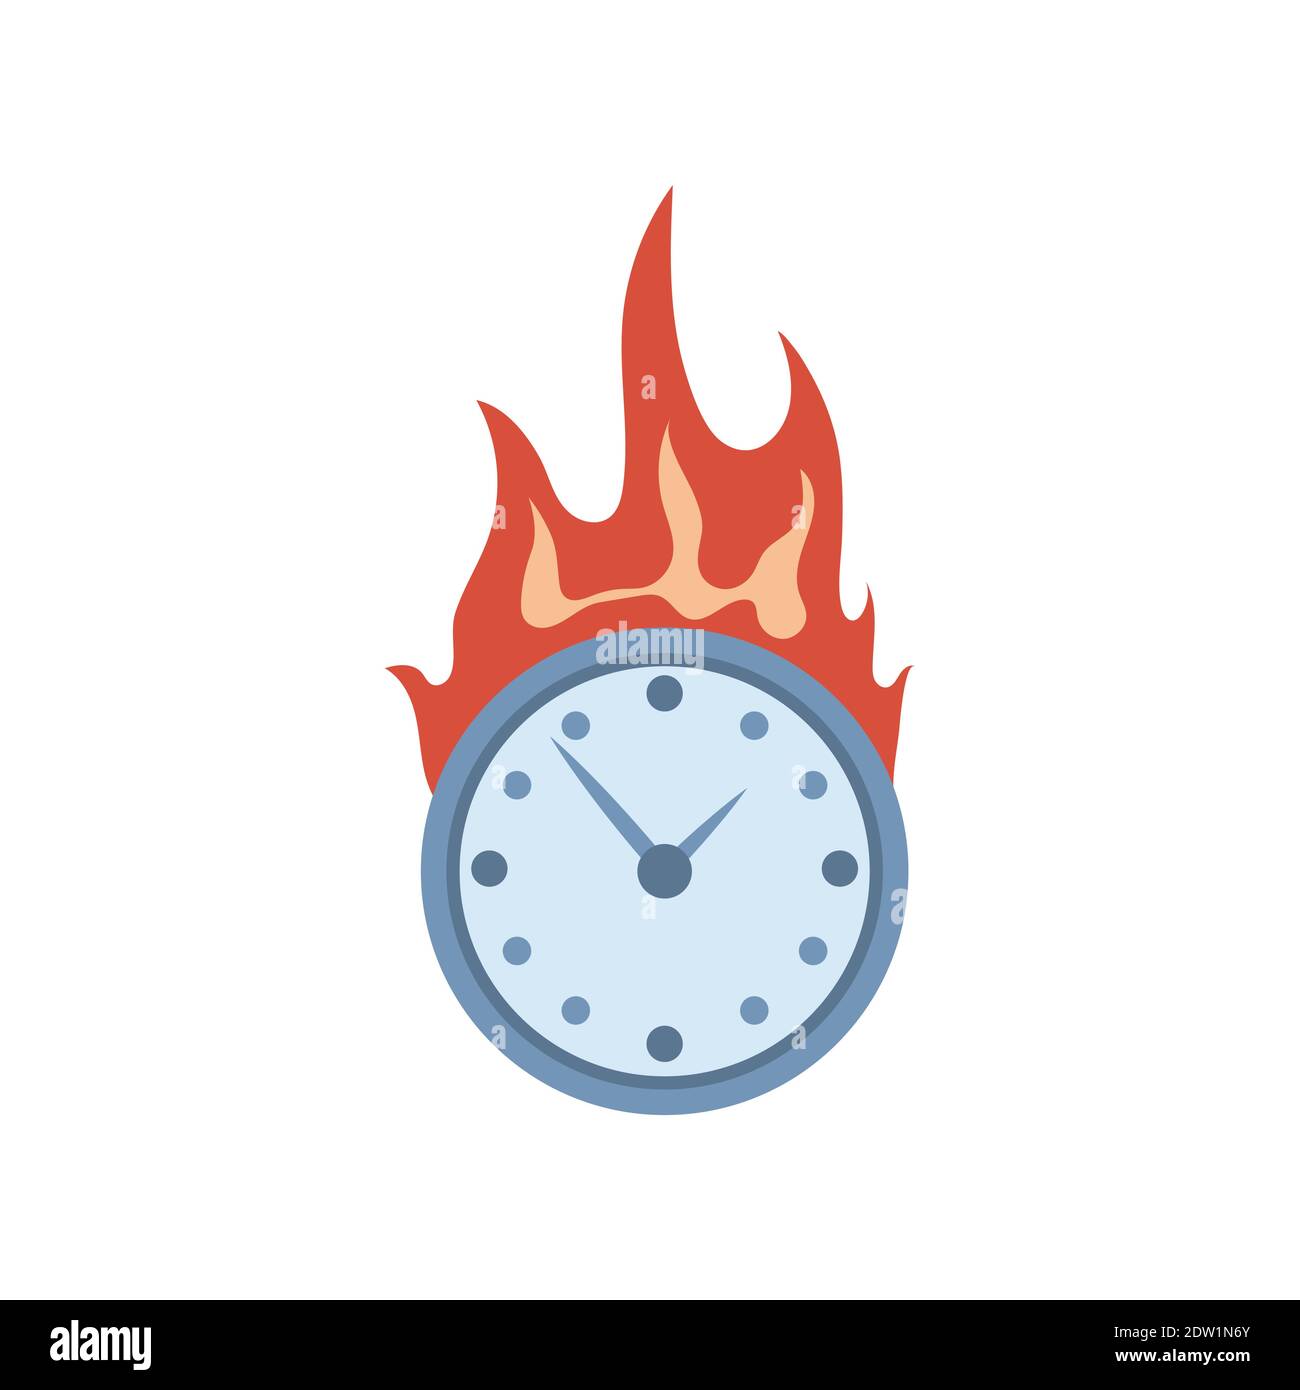 Brennende Uhr Vektor flache Illustration isoliert auf weißem Hintergrund.  Deadline, flammende Uhr, Uhr auf Feuerzeichen. Die Zeit läuft schnell  Element für Logo-Design Stock-Vektorgrafik - Alamy